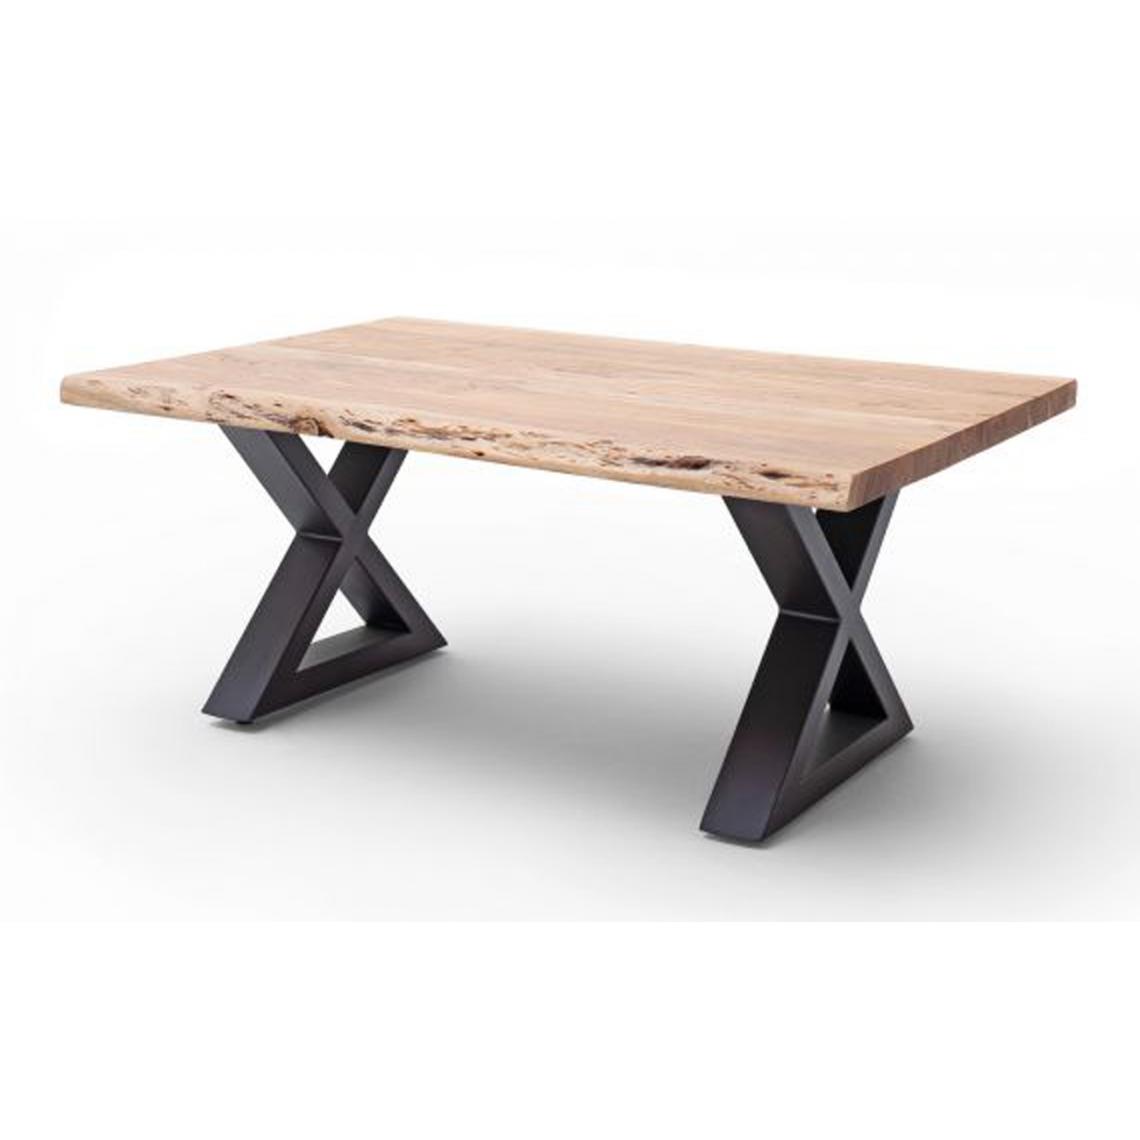 Pegane - Table basse en bois d'acacia massif naturel / acier anthracite - L.110 x H.45 x P.70 cm - Tables basses